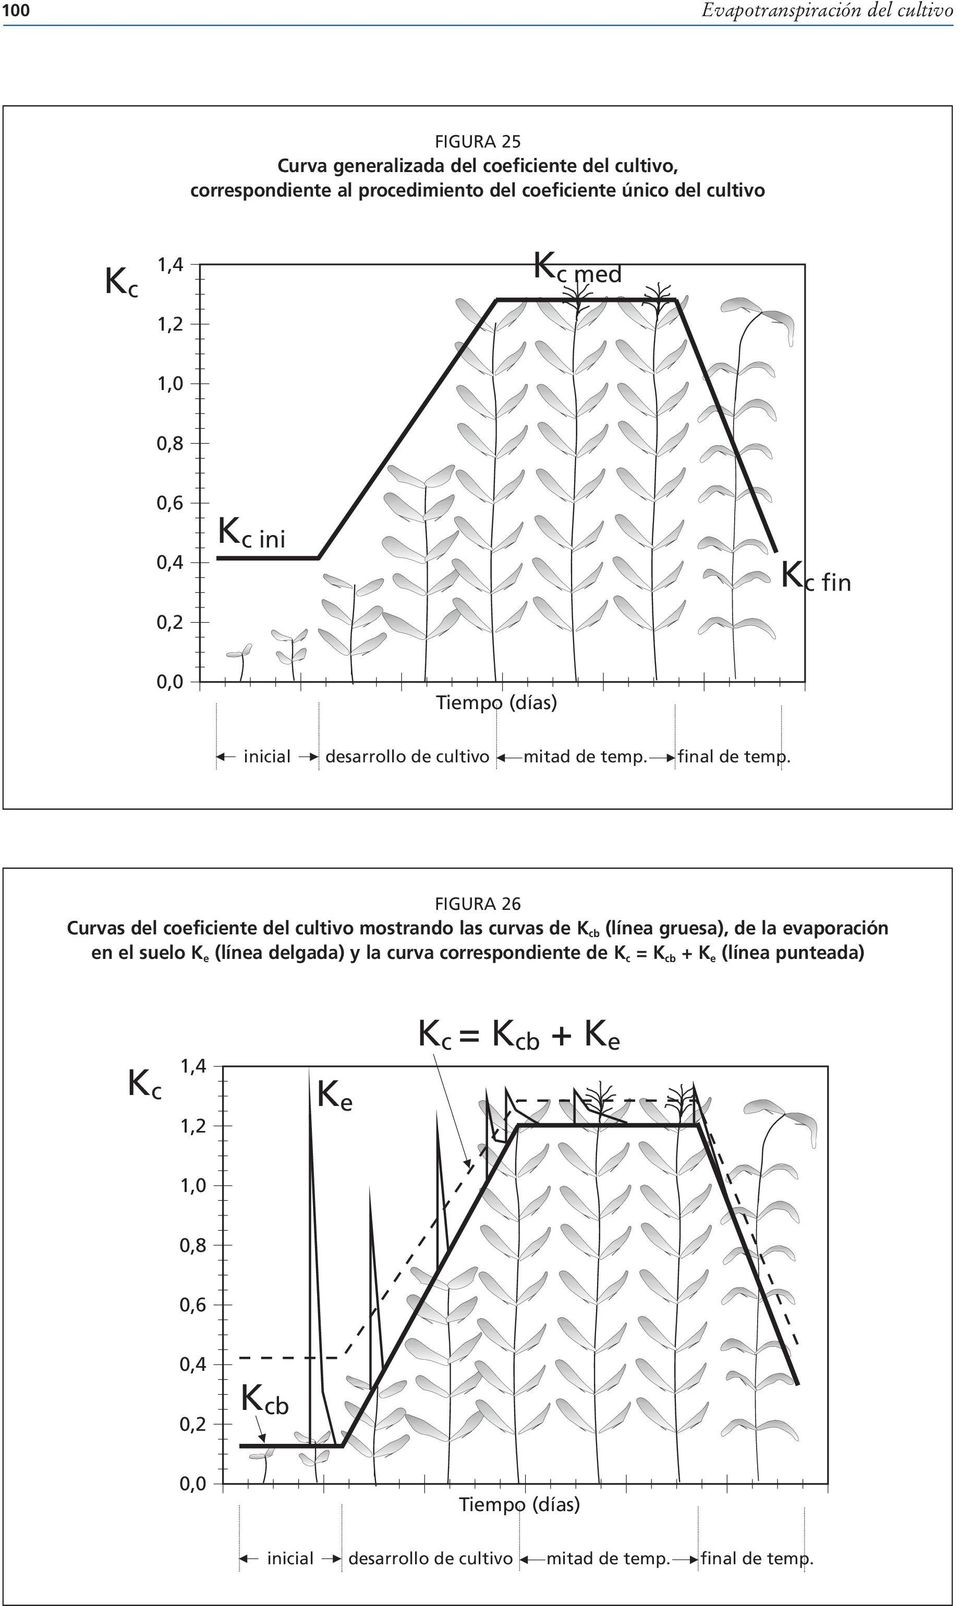 FIGURA 26 Curvas del coeficiente del cultivo mostrando las curvas de K cb (línea gruesa), de la evaporación en el suelo K e (línea delgada) y la